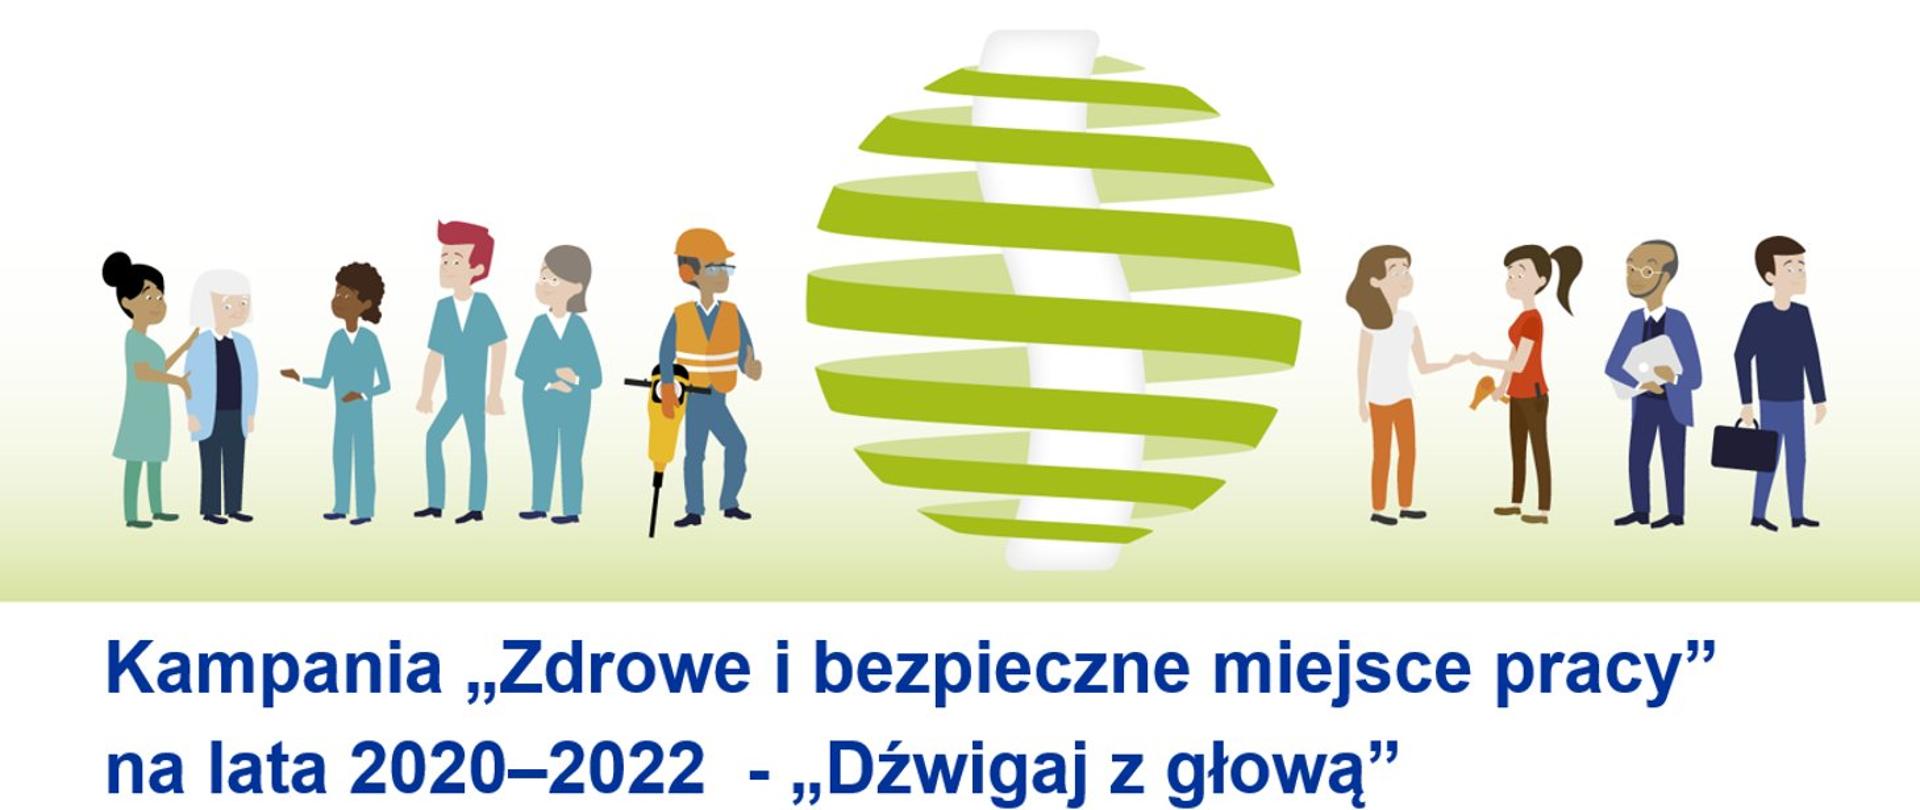 Baner kampani Dźwigaj z głową przedstawiające ludzi pomiędzy zieloną kulą oraz napis Kampania Zdrowe i bezpieczne miejsce pracy na lata 2020 - 2022D - Dzwigaj z głową